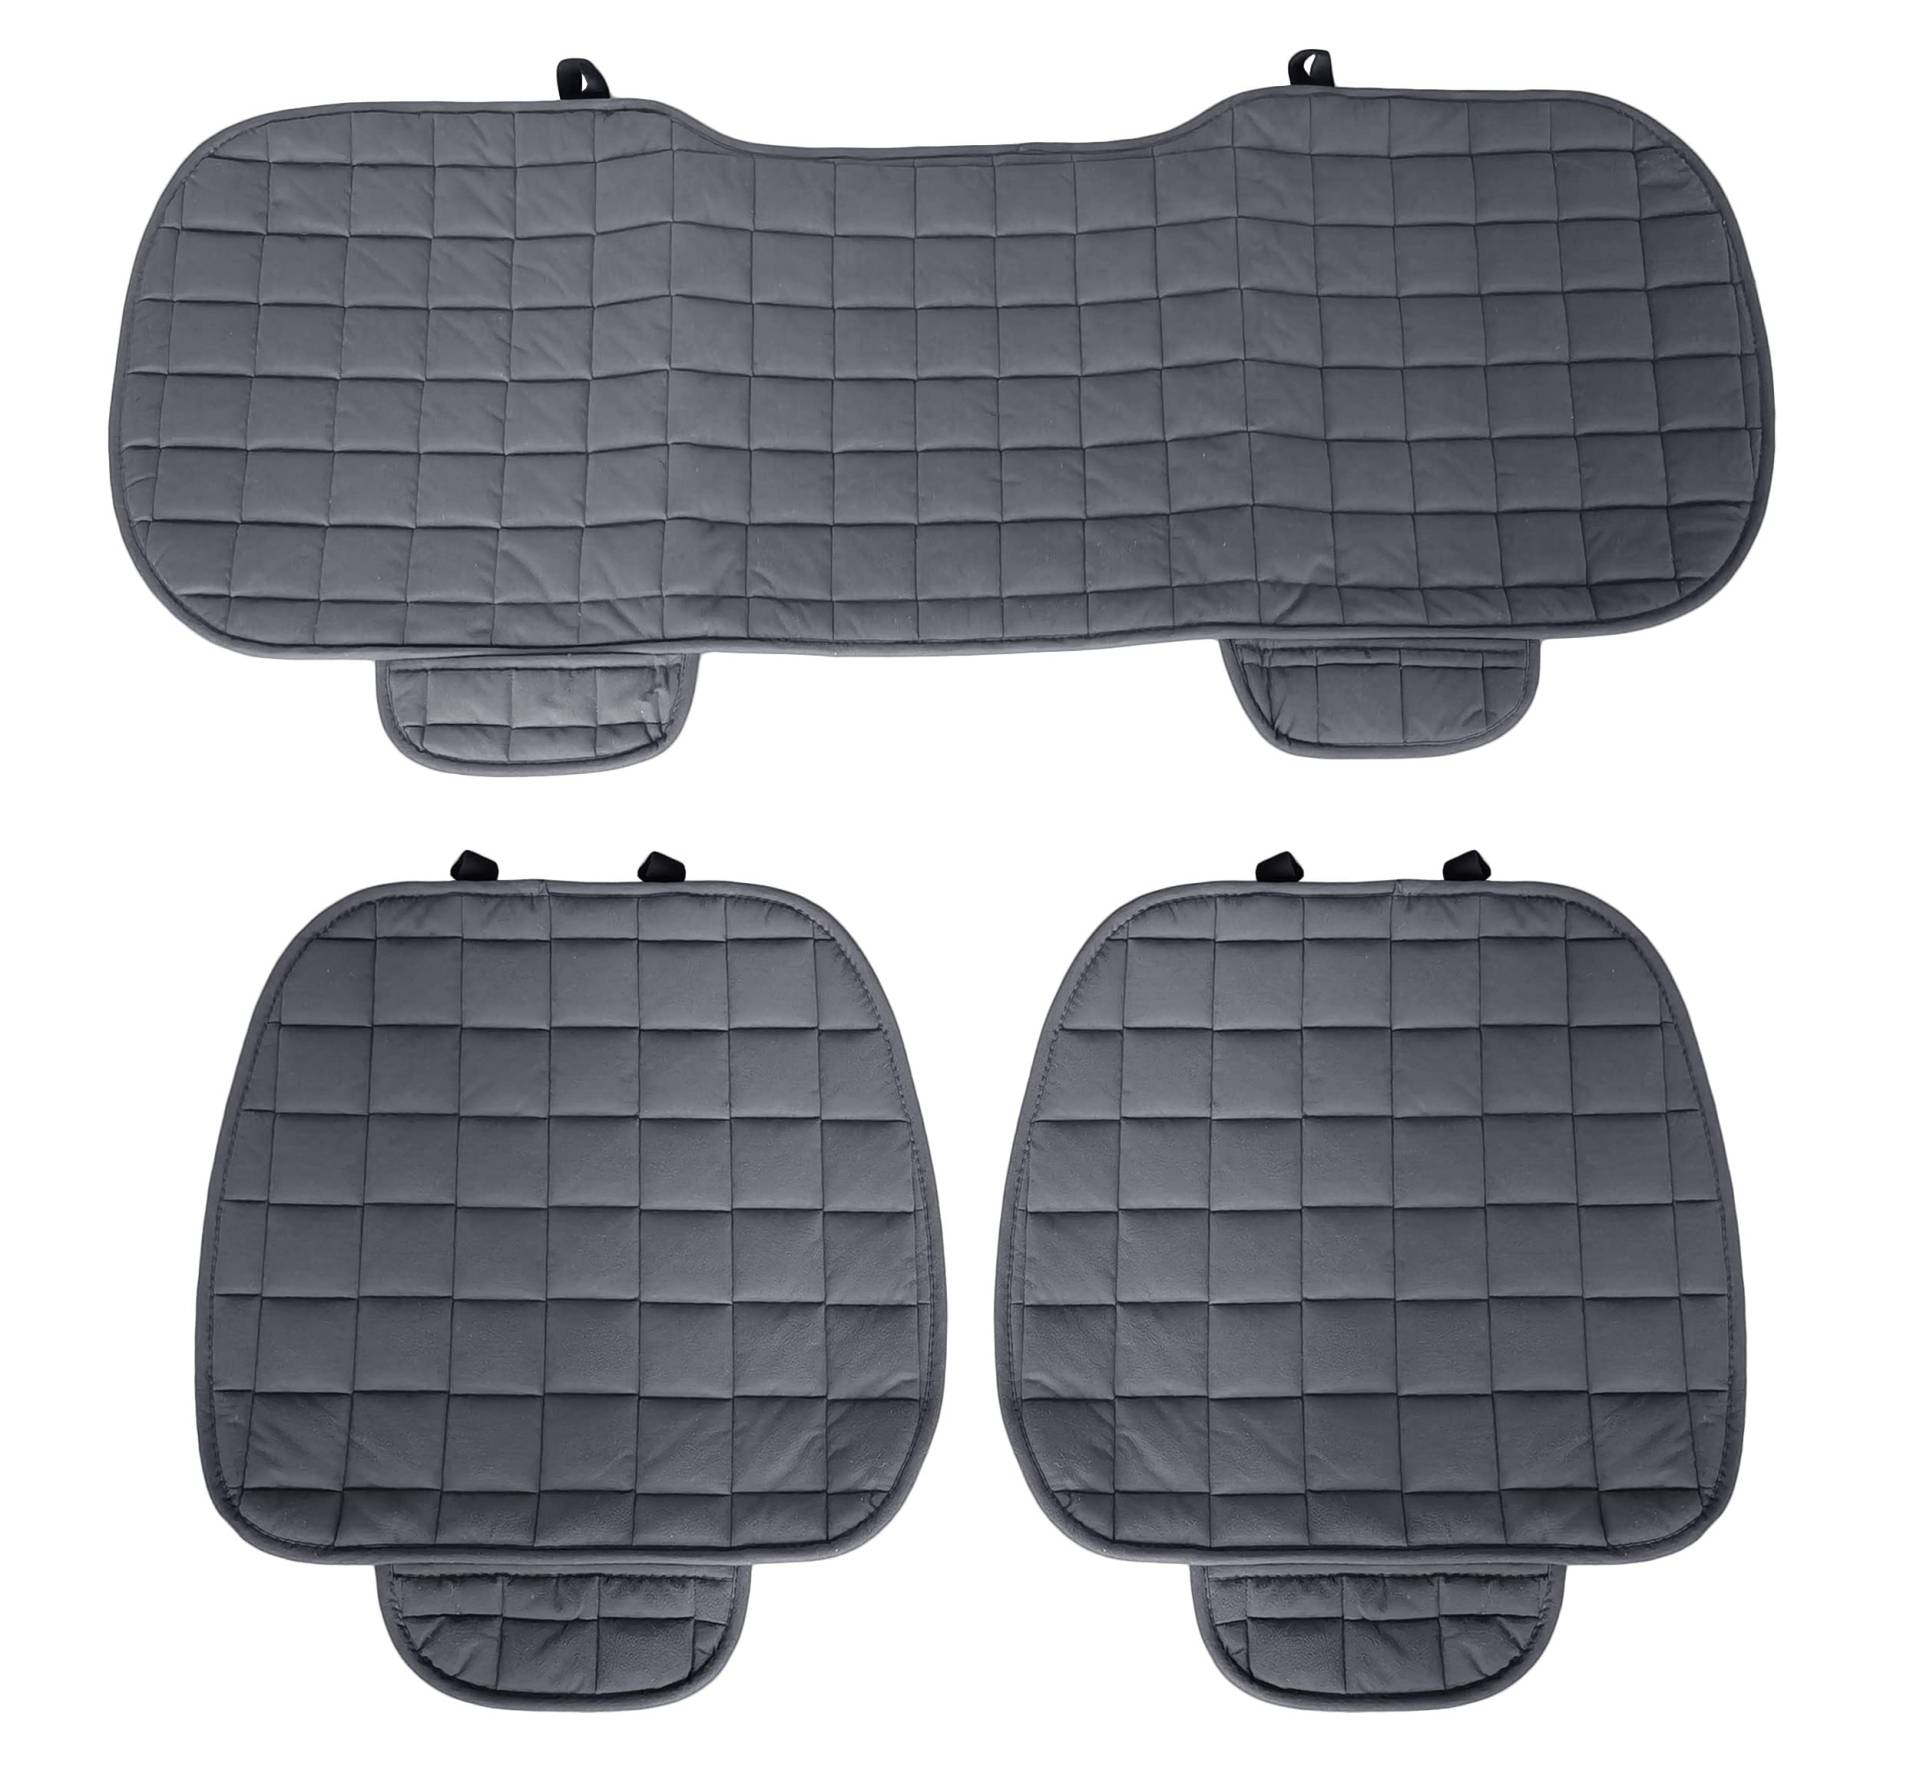 Auto Accessori Lupex - Universal-Autositzbezug 3-teilig, Sitzschutz 2 vorne und 1 hinten, Grau, Komfortschutz für das Innenkissen des Autos von Auto Accessori Lupex